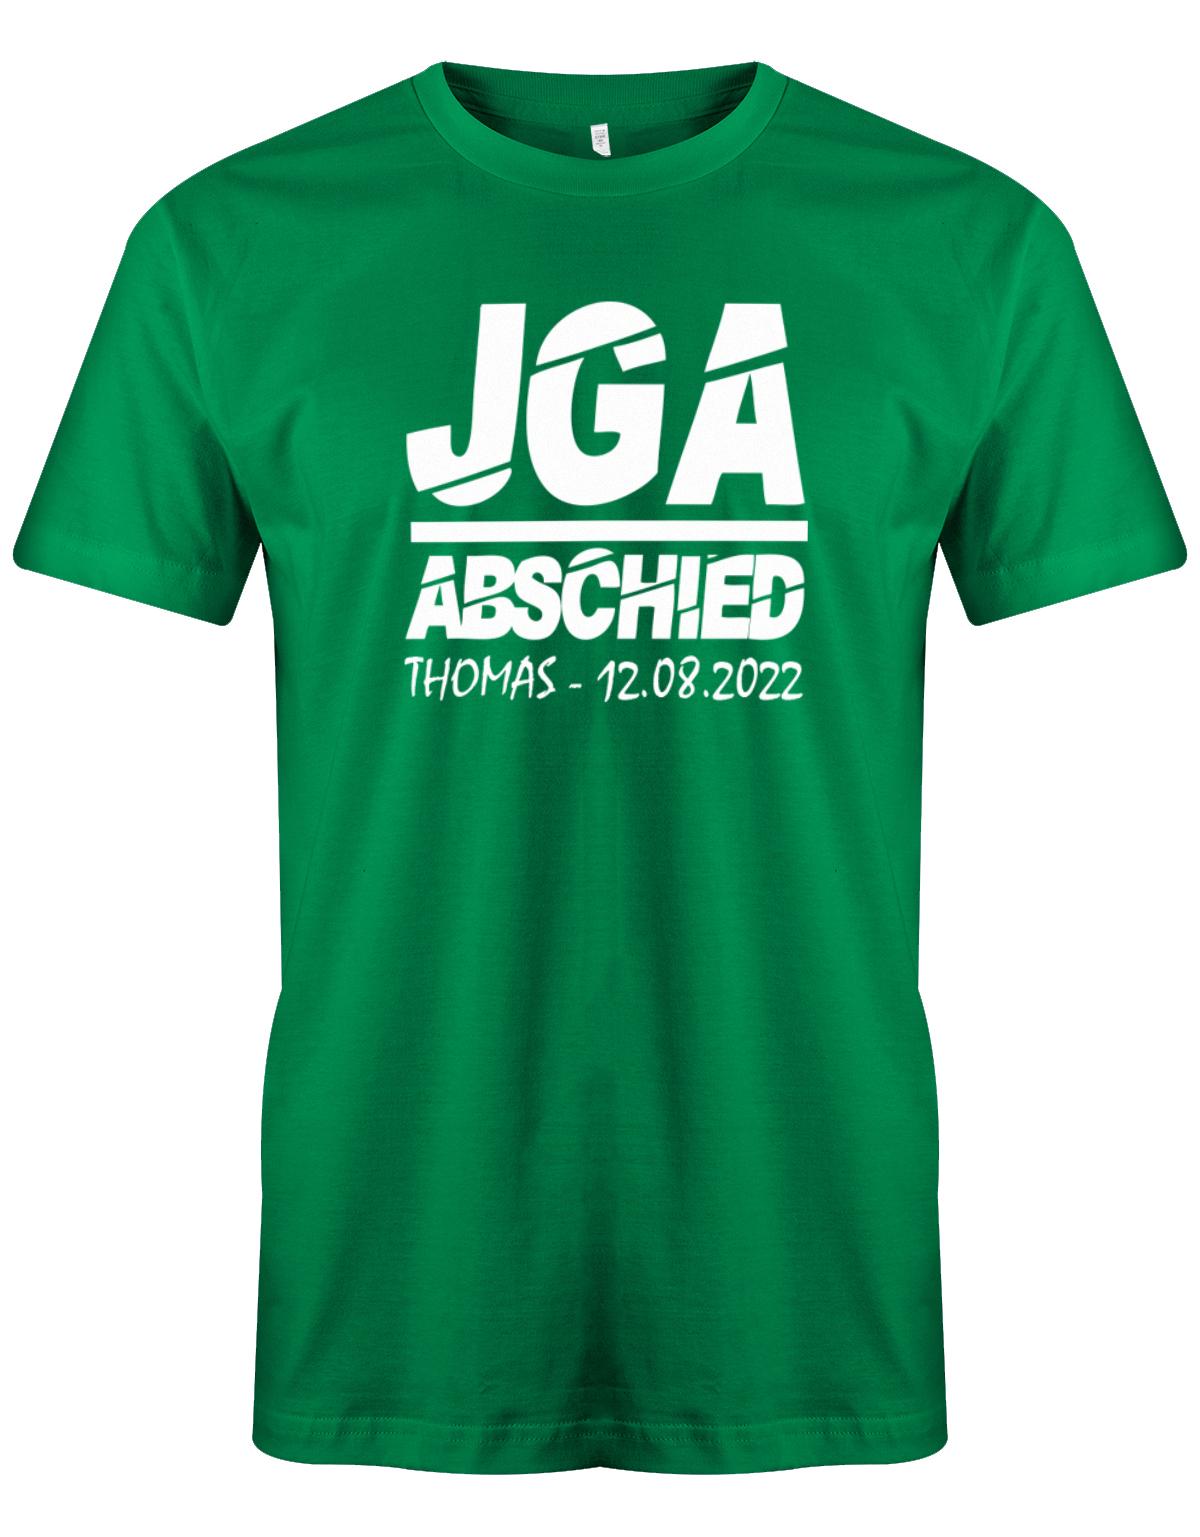 JGA-Abschied-mit-Name-und-Datum-Herren-Shirt-Gruen